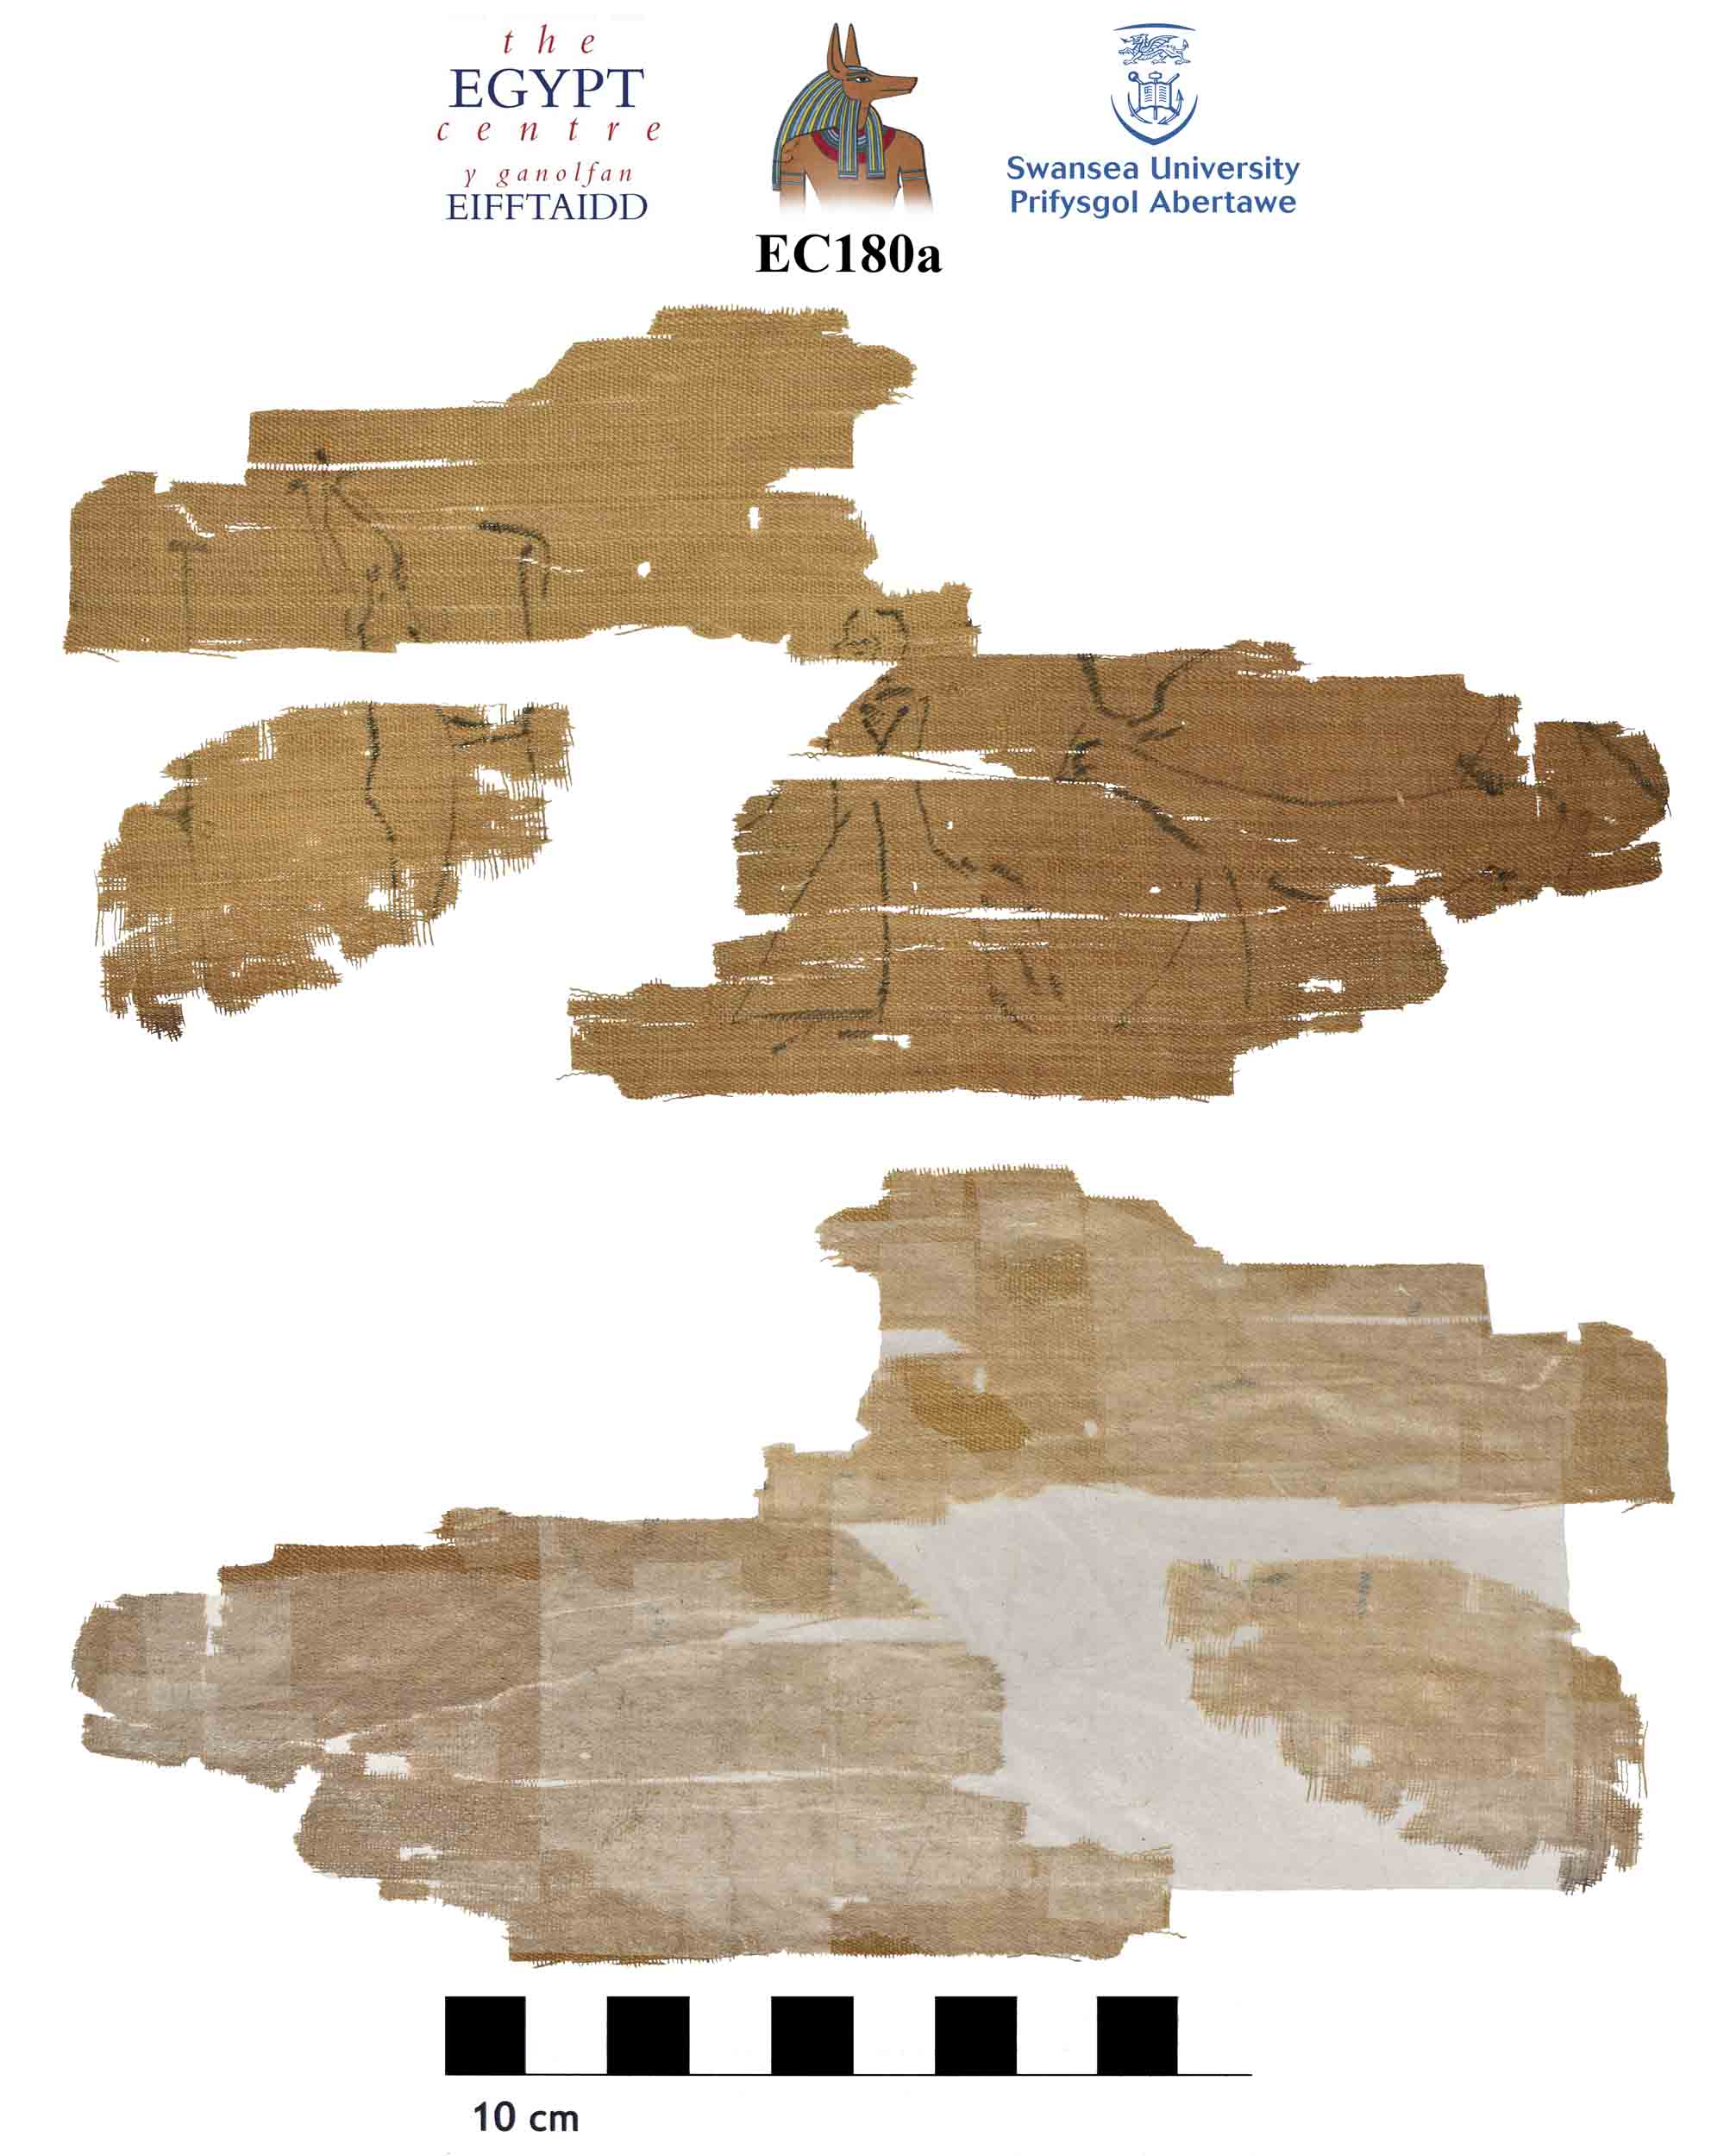 Image for: Fragmentary mummy bandage